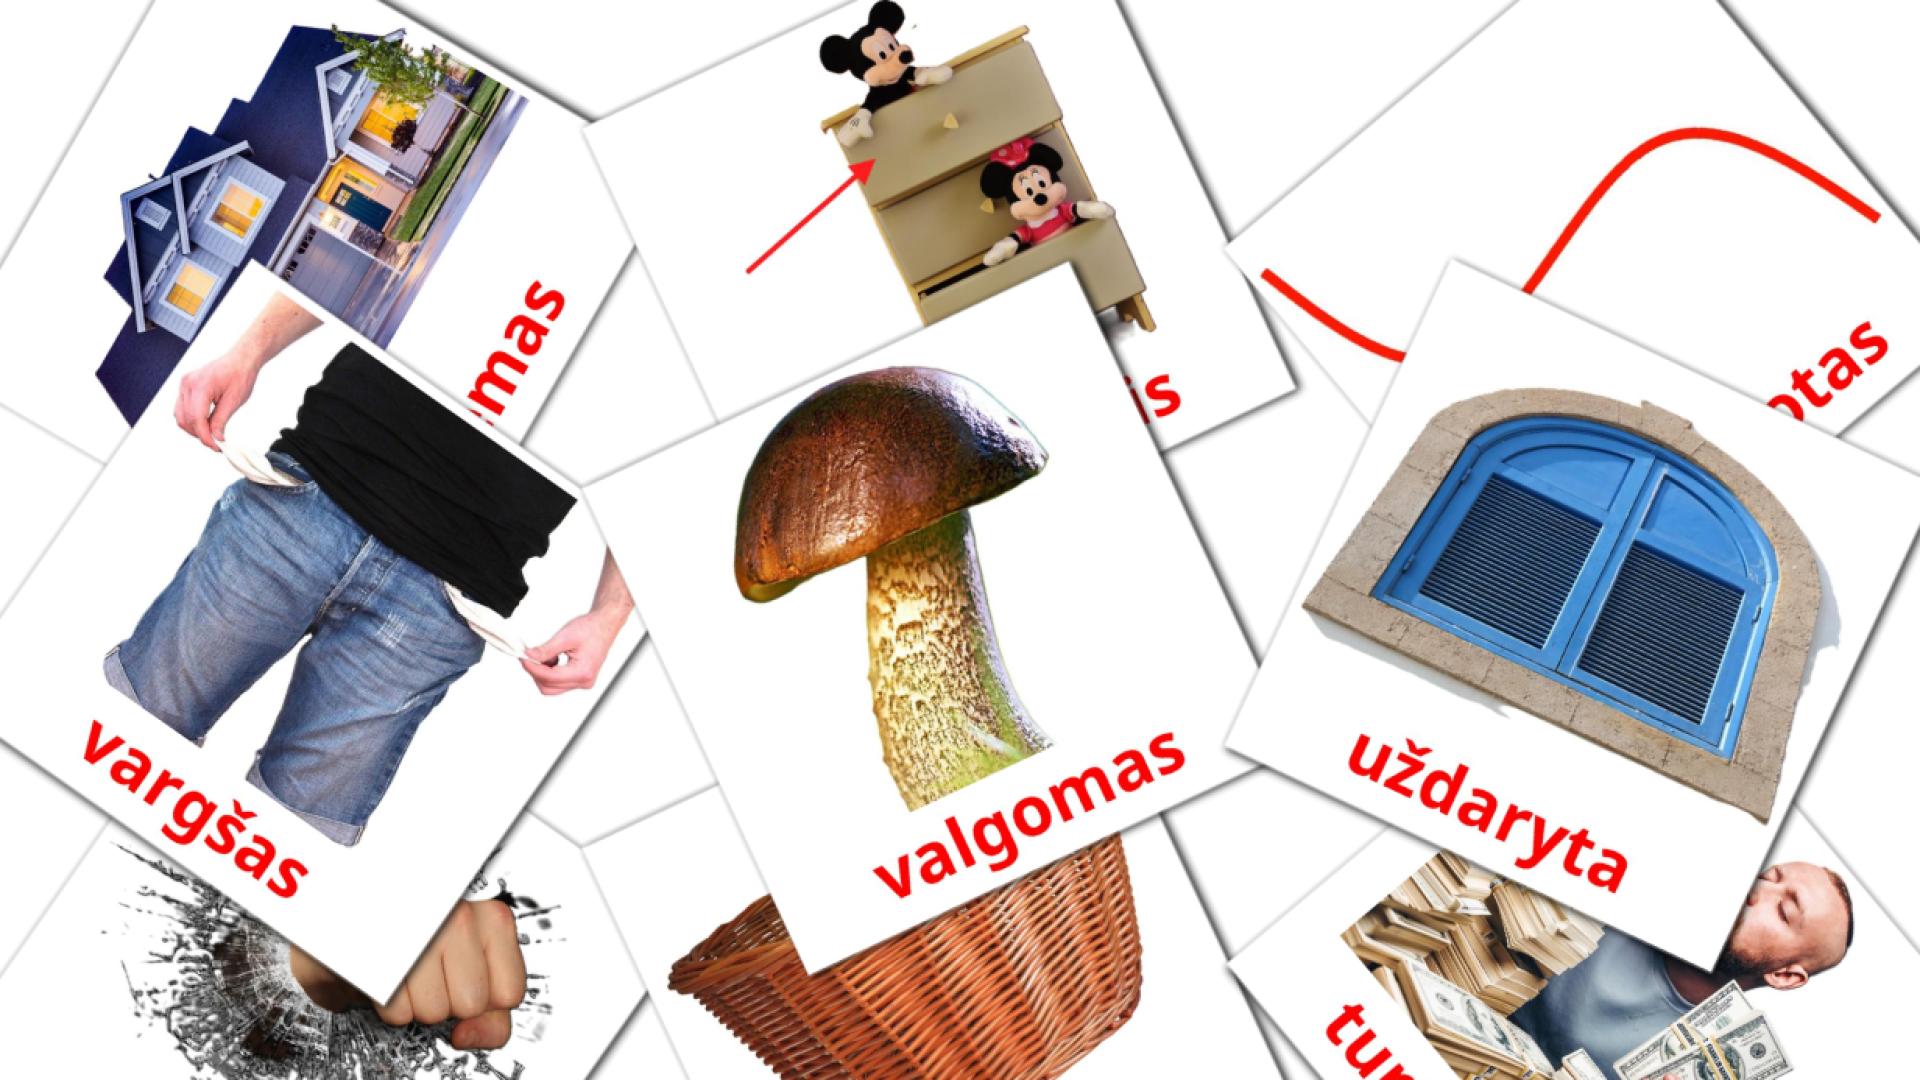 lituano tarjetas de vocabulario en būdvardžiai